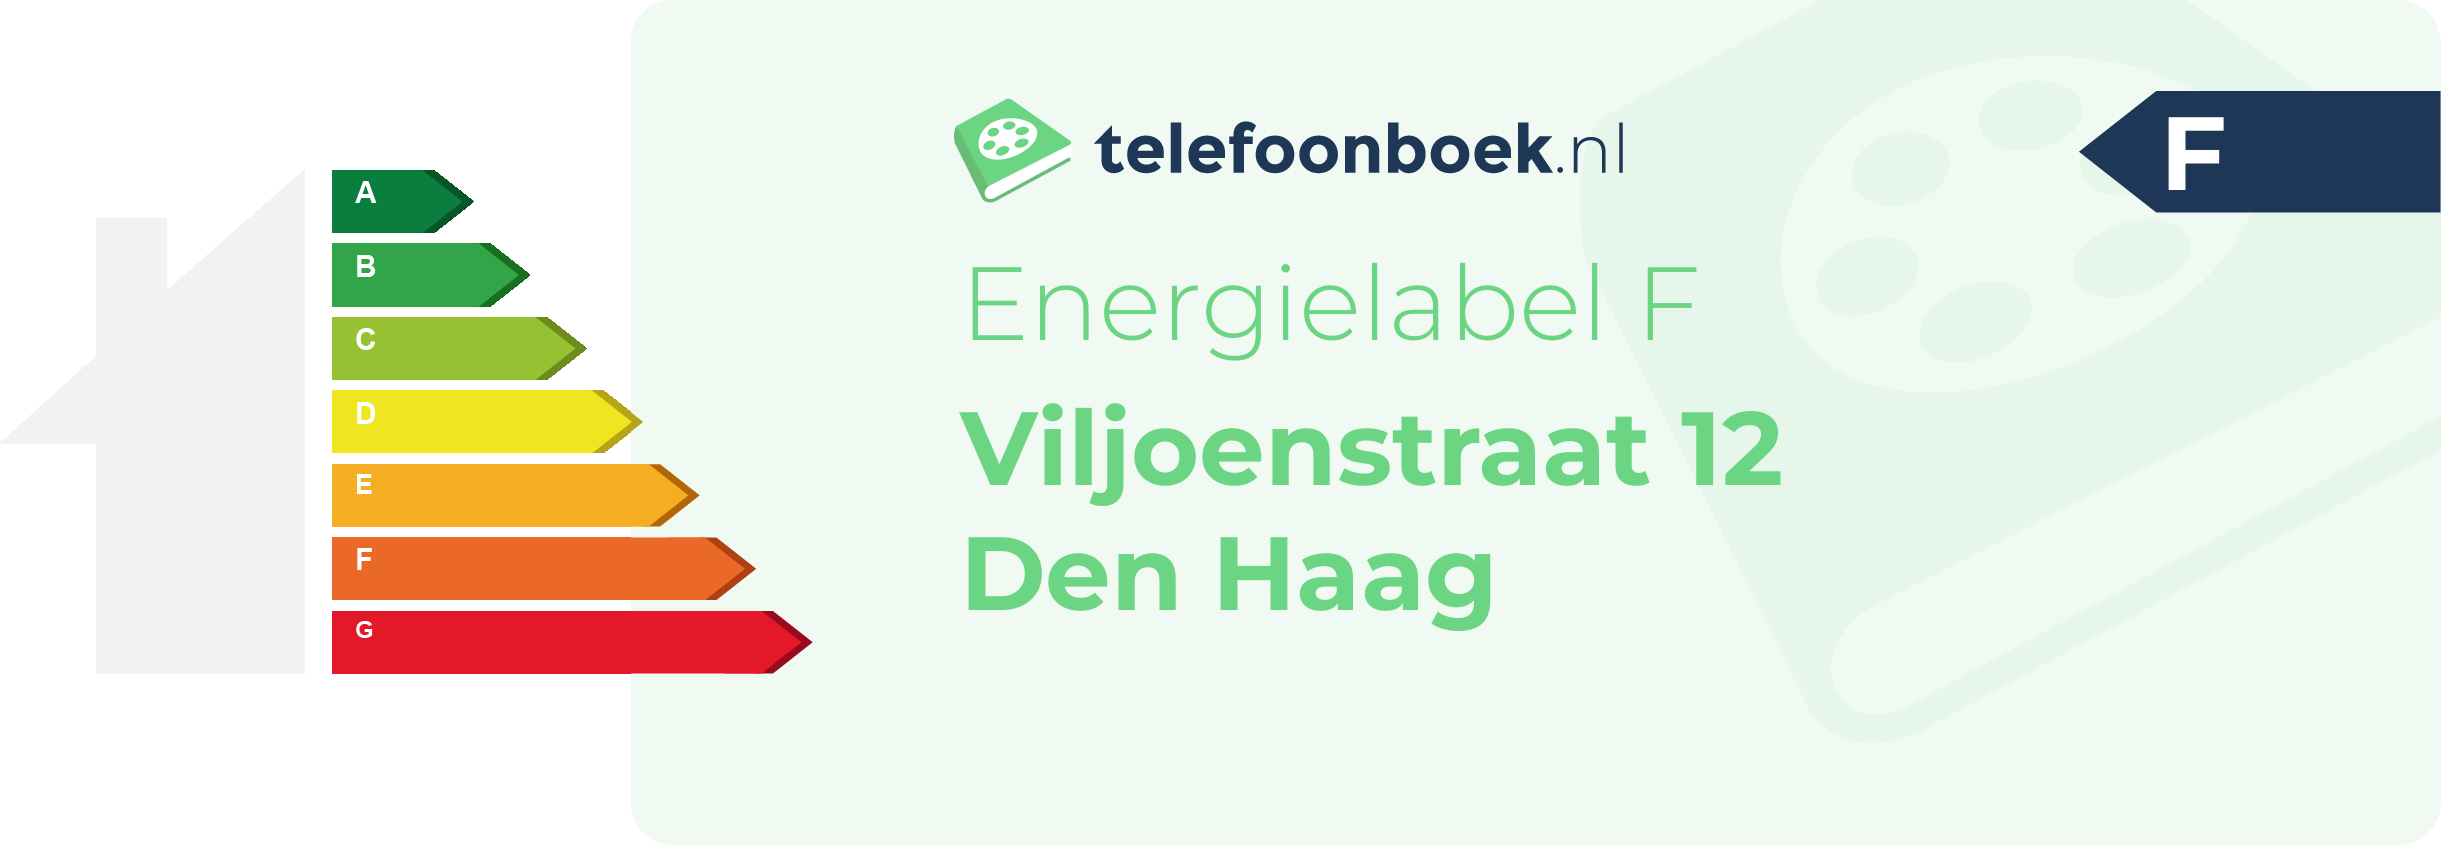 Energielabel Viljoenstraat 12 Den Haag